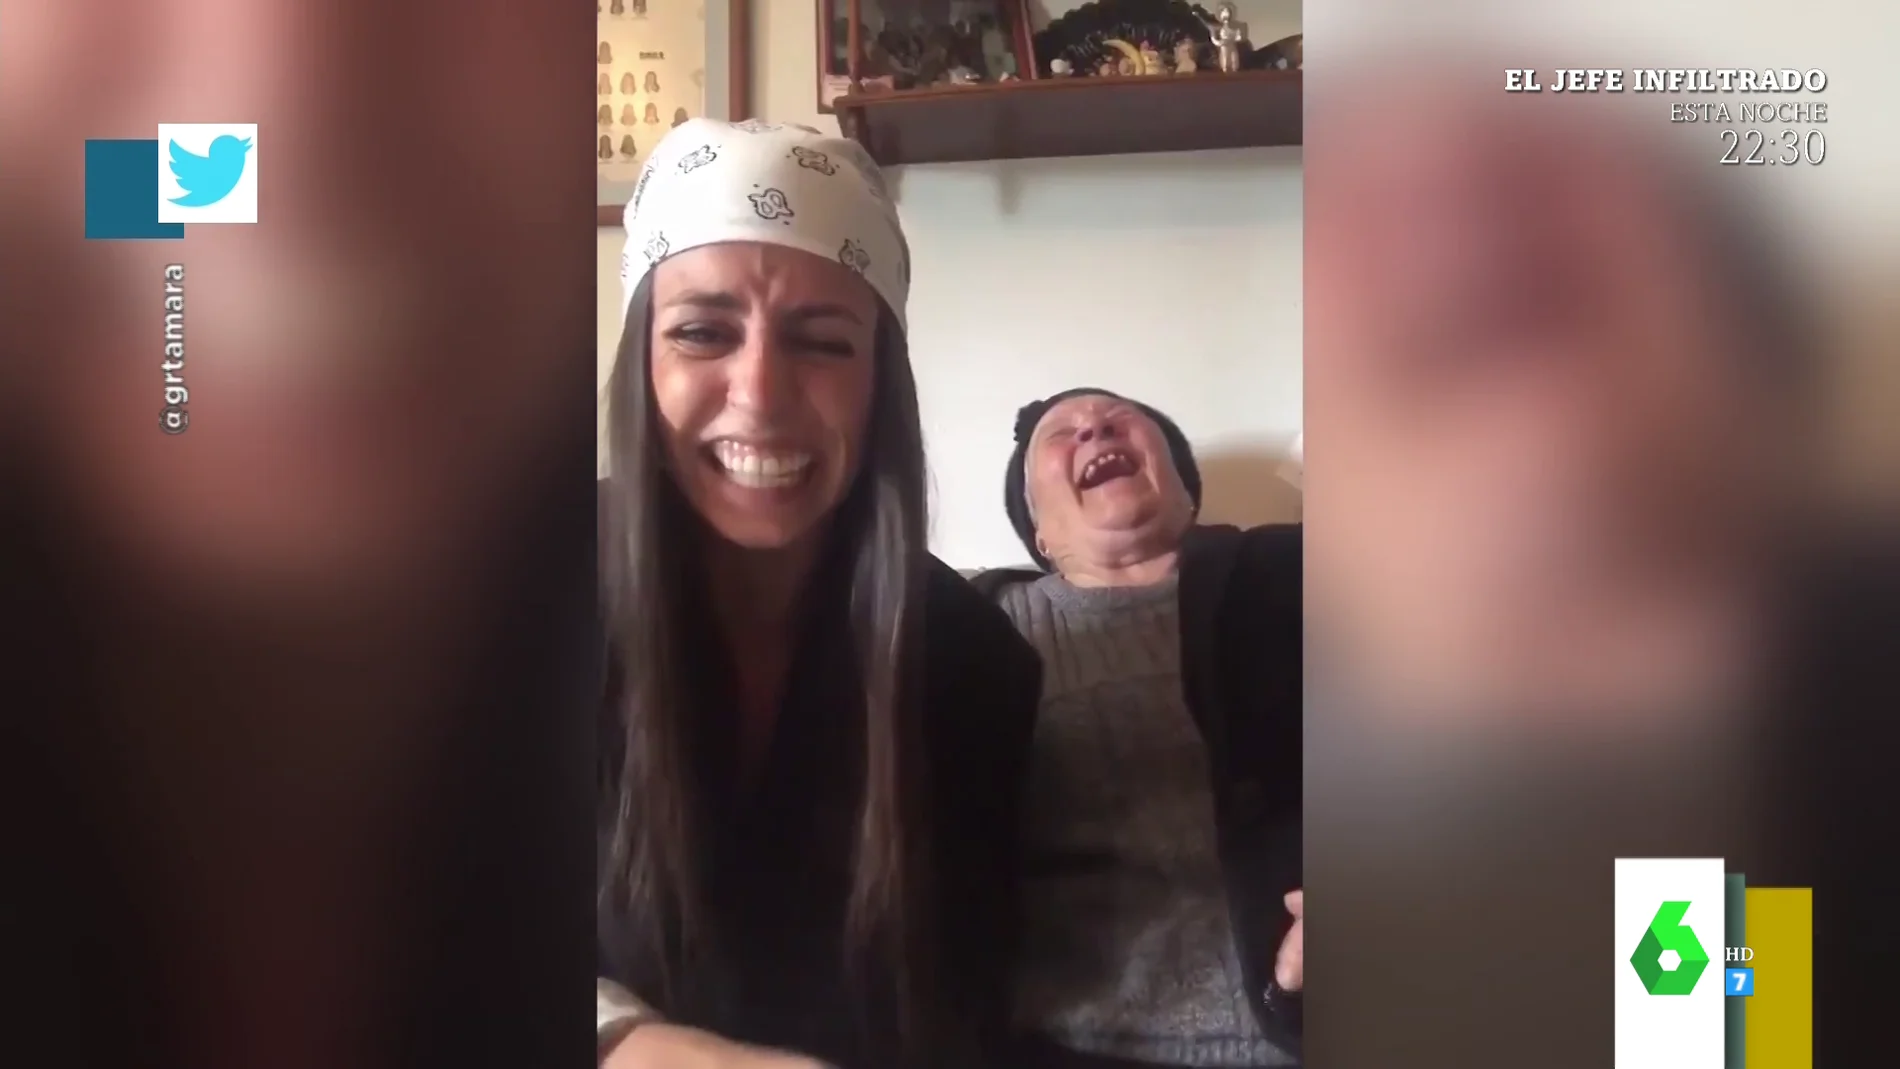 La desternillante broma de una nieta a su abuela: "Me ha dado un ataque de risa"